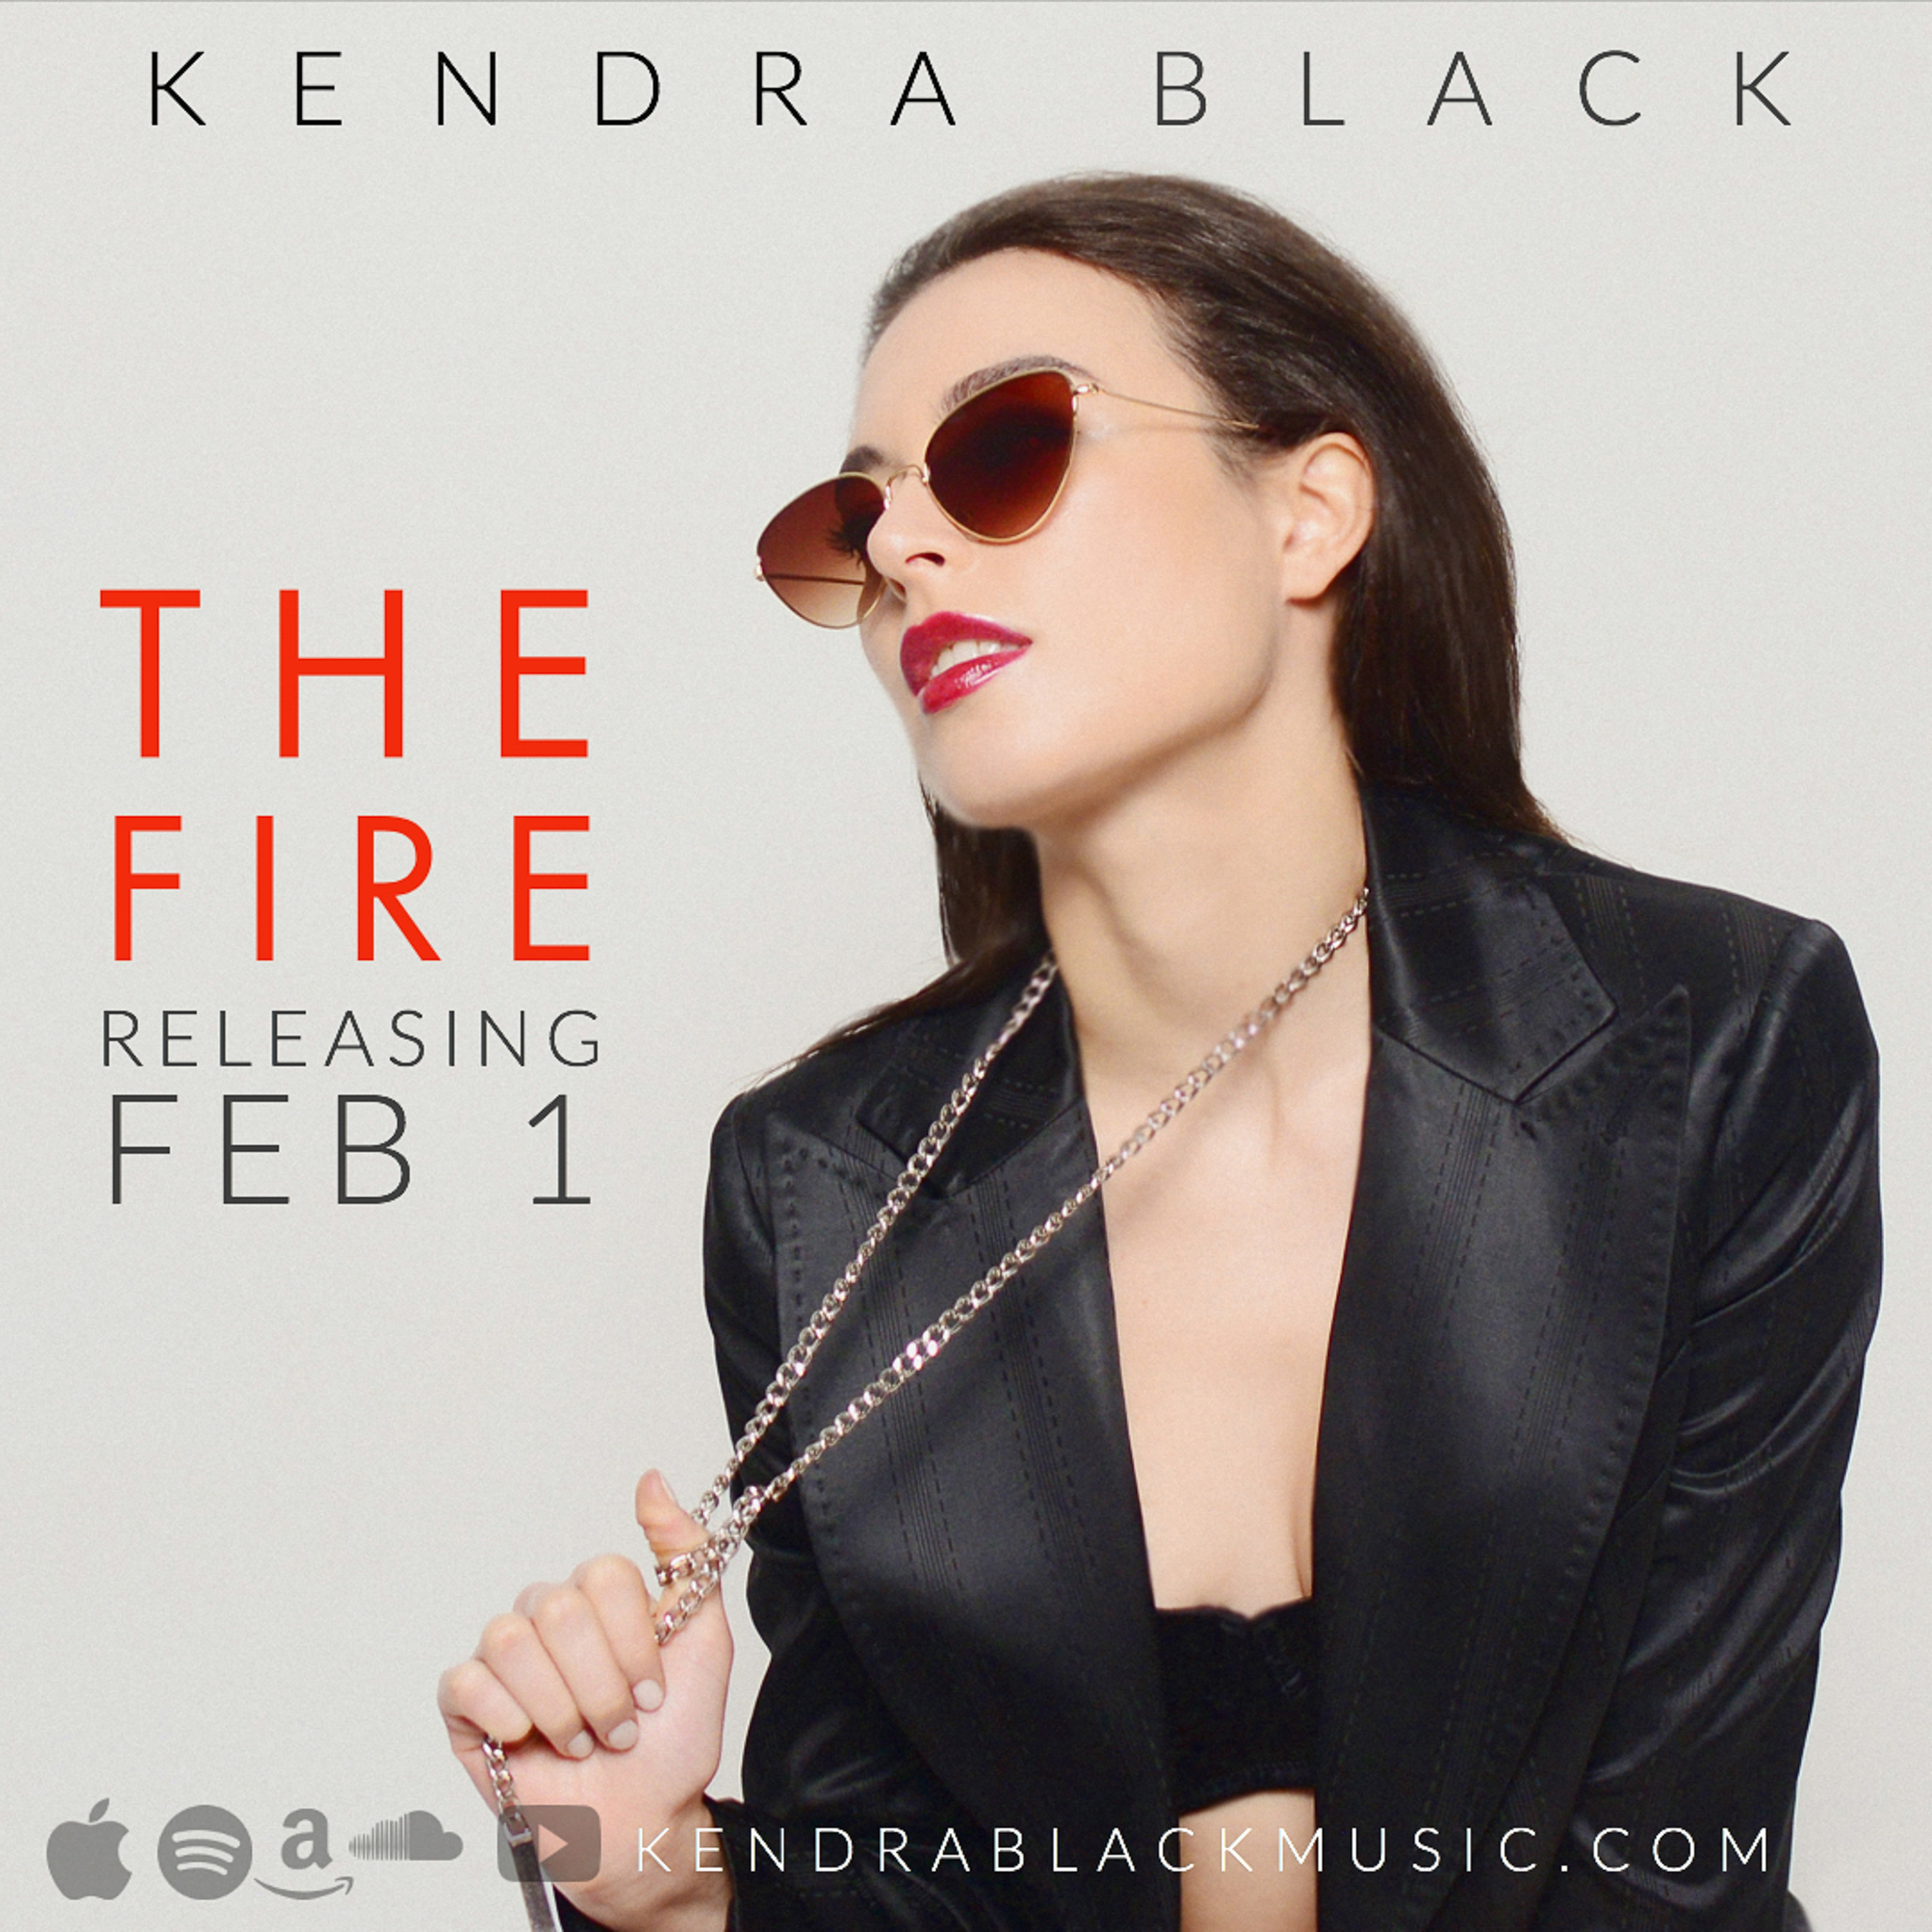 Kendra Black - "The Fire" Releasing Feb 1